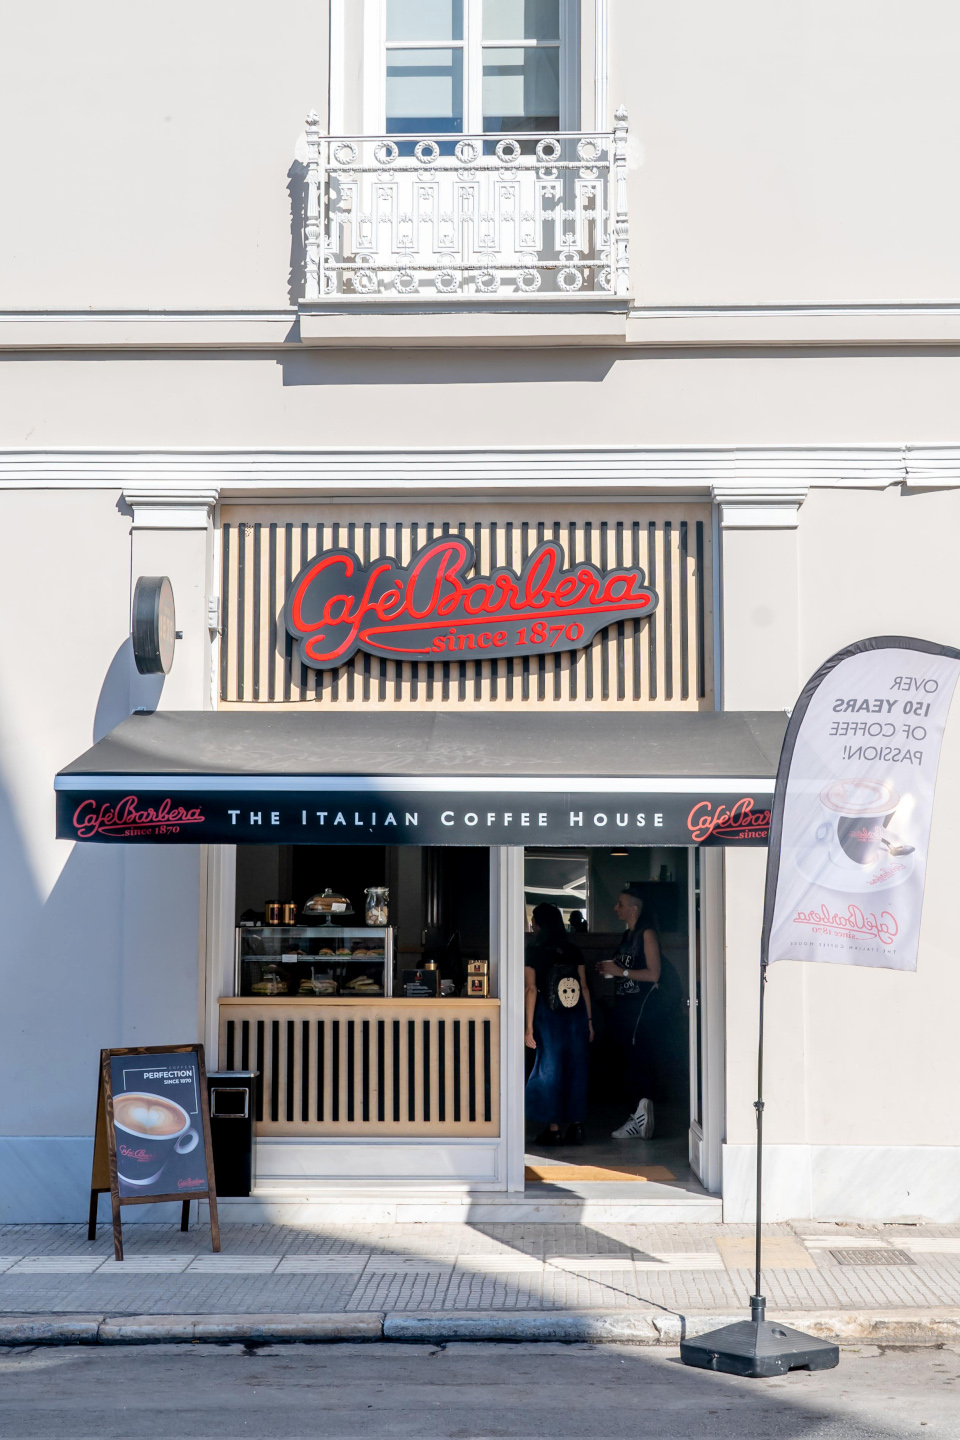 για ποιους λόγους μπήκε στην ελληνική αγορά η café barbera – το πλάνο επέκτασης